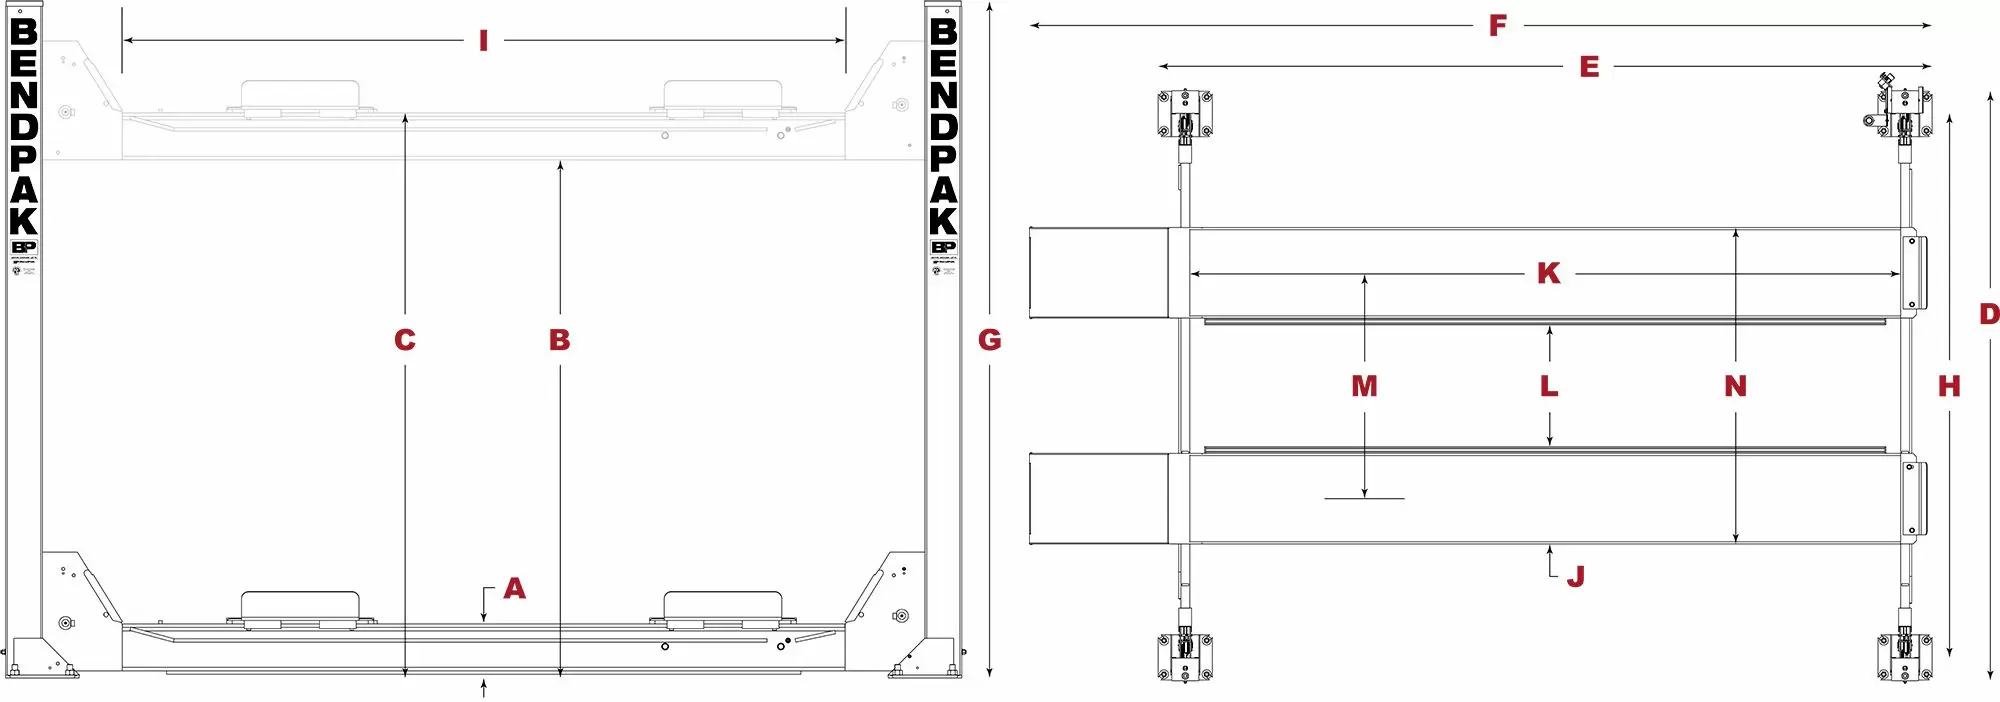 BendPak-HDS-14-Series-Specifications-Diagram_jpg-1.webp